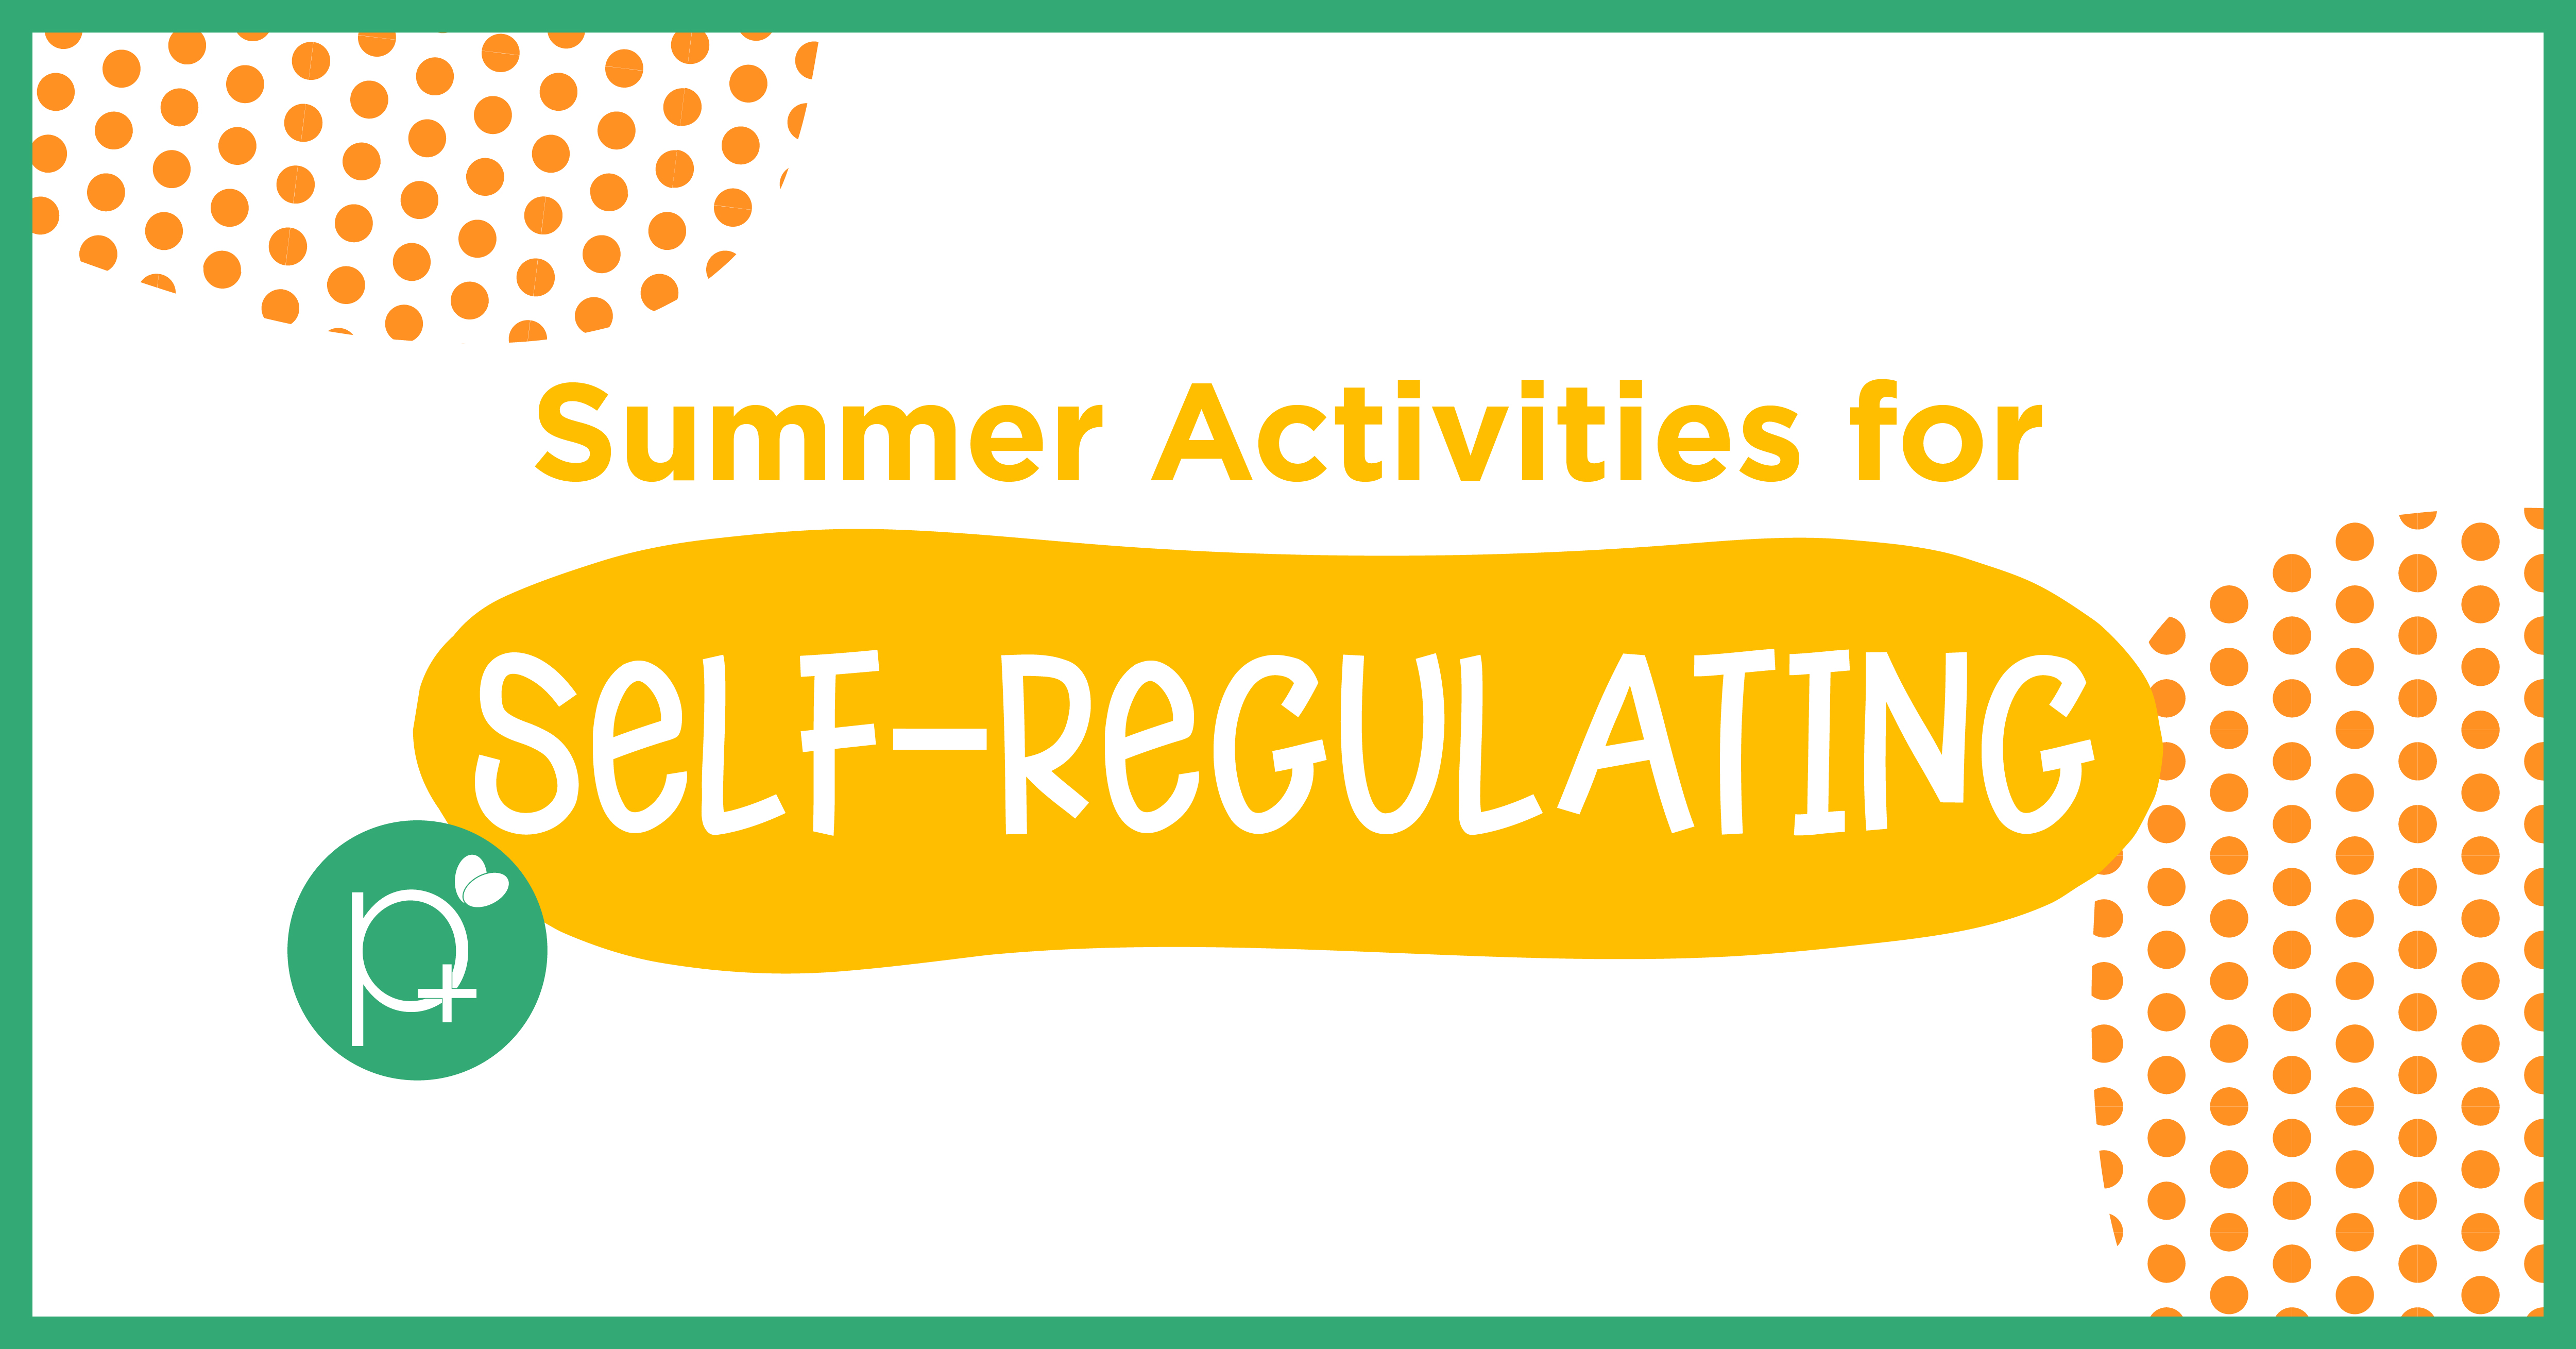 Self-Regulating Activities for Summer